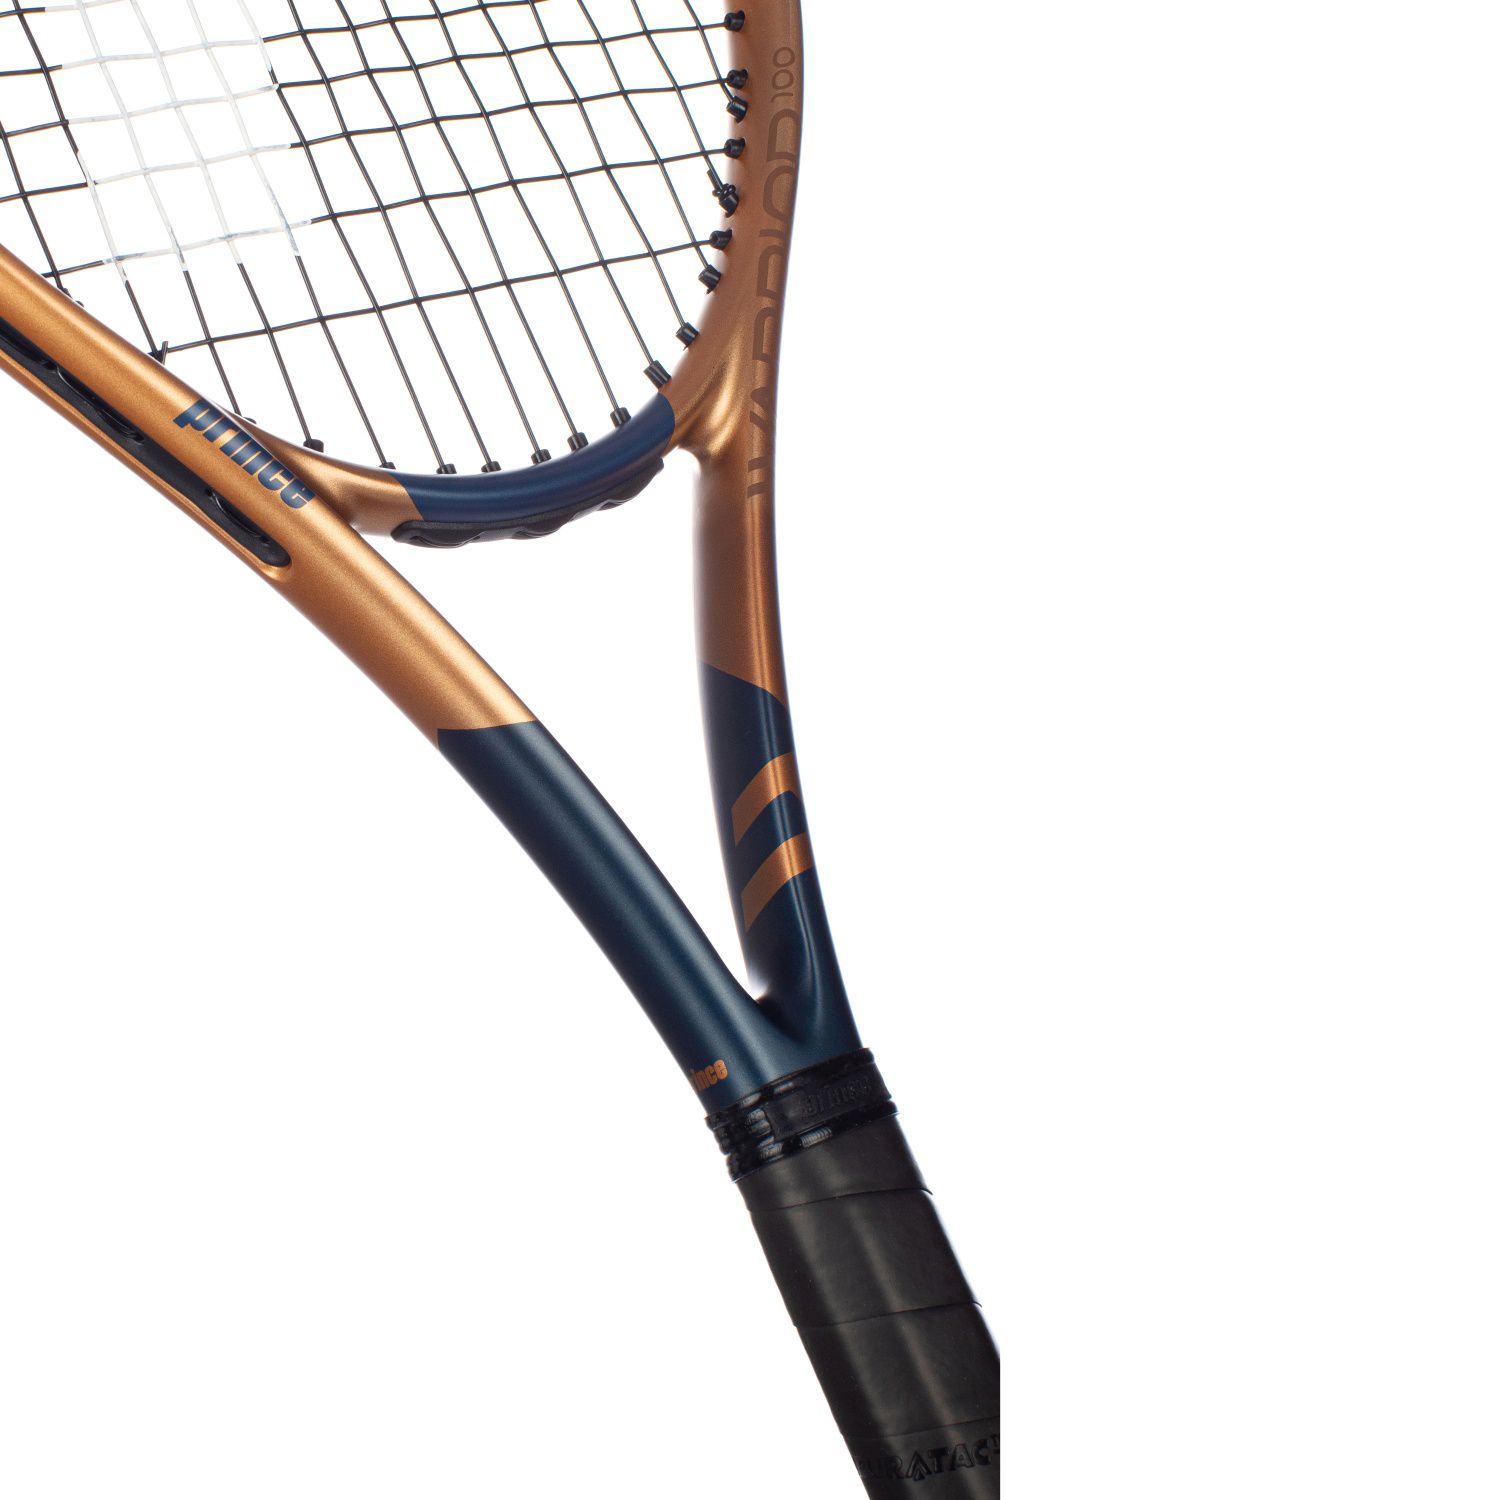 Raqueta De Tenis Prince Warrior 100 285 G (encordada Y Con Funda)